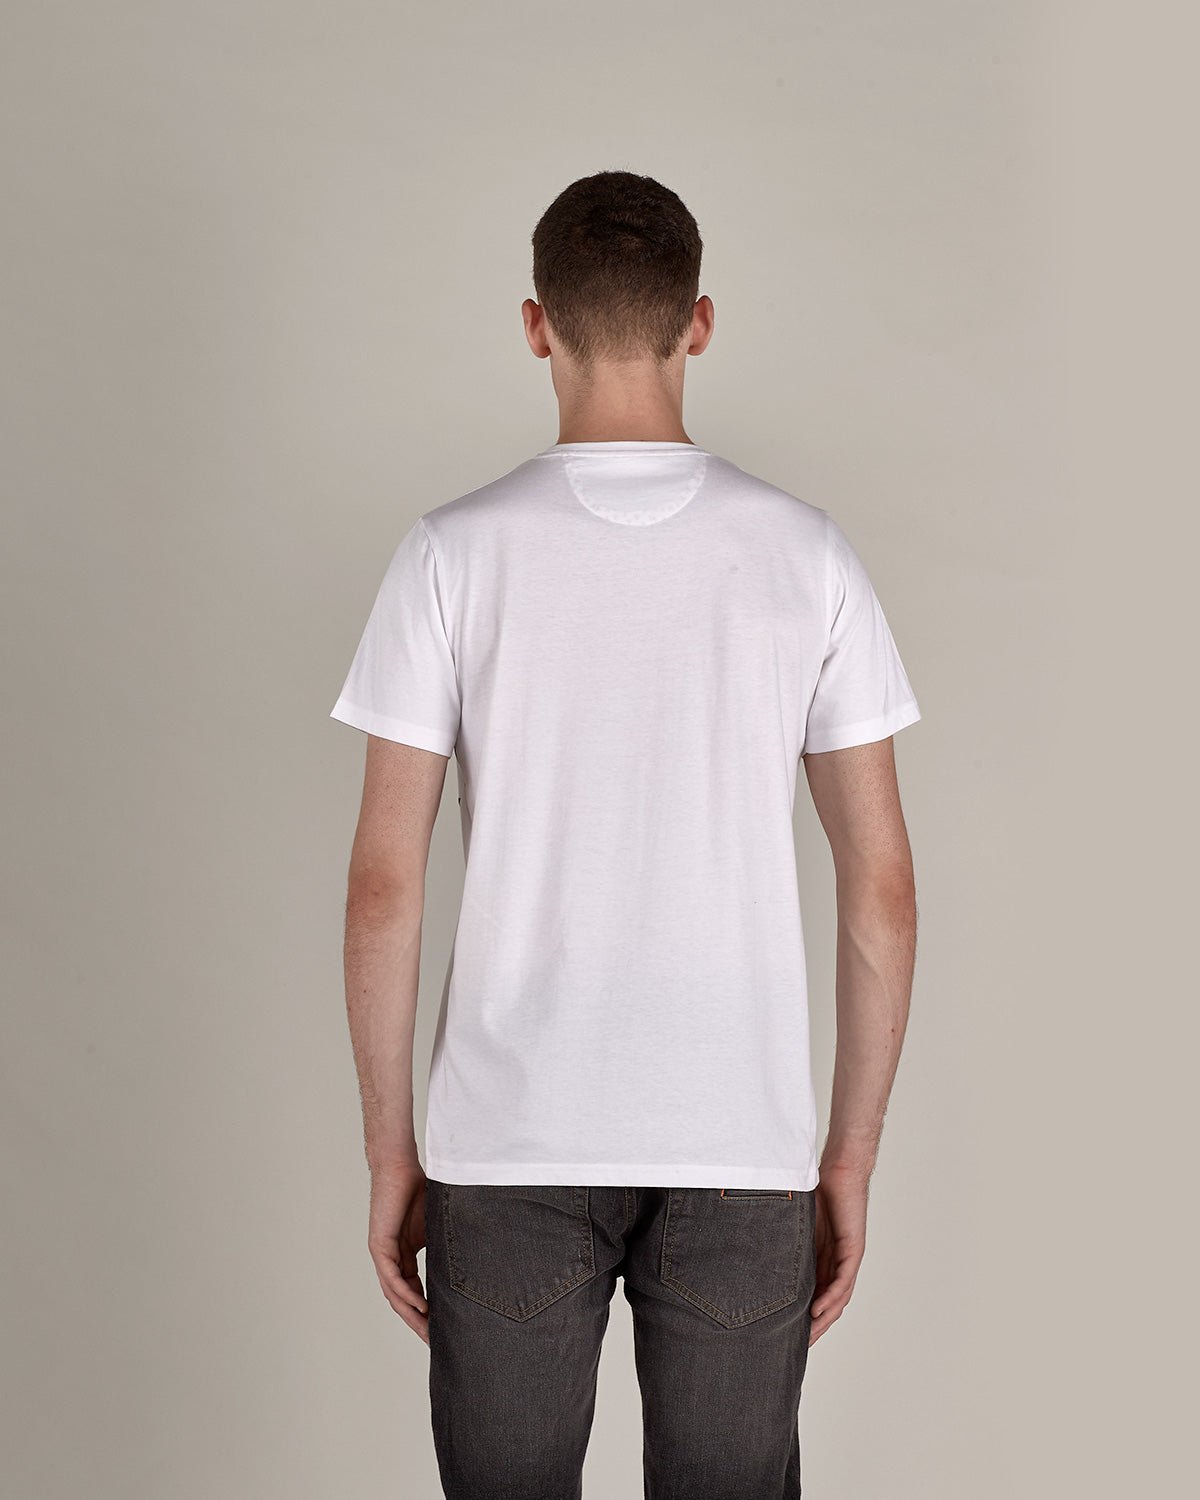 T-shirt Umberto - White